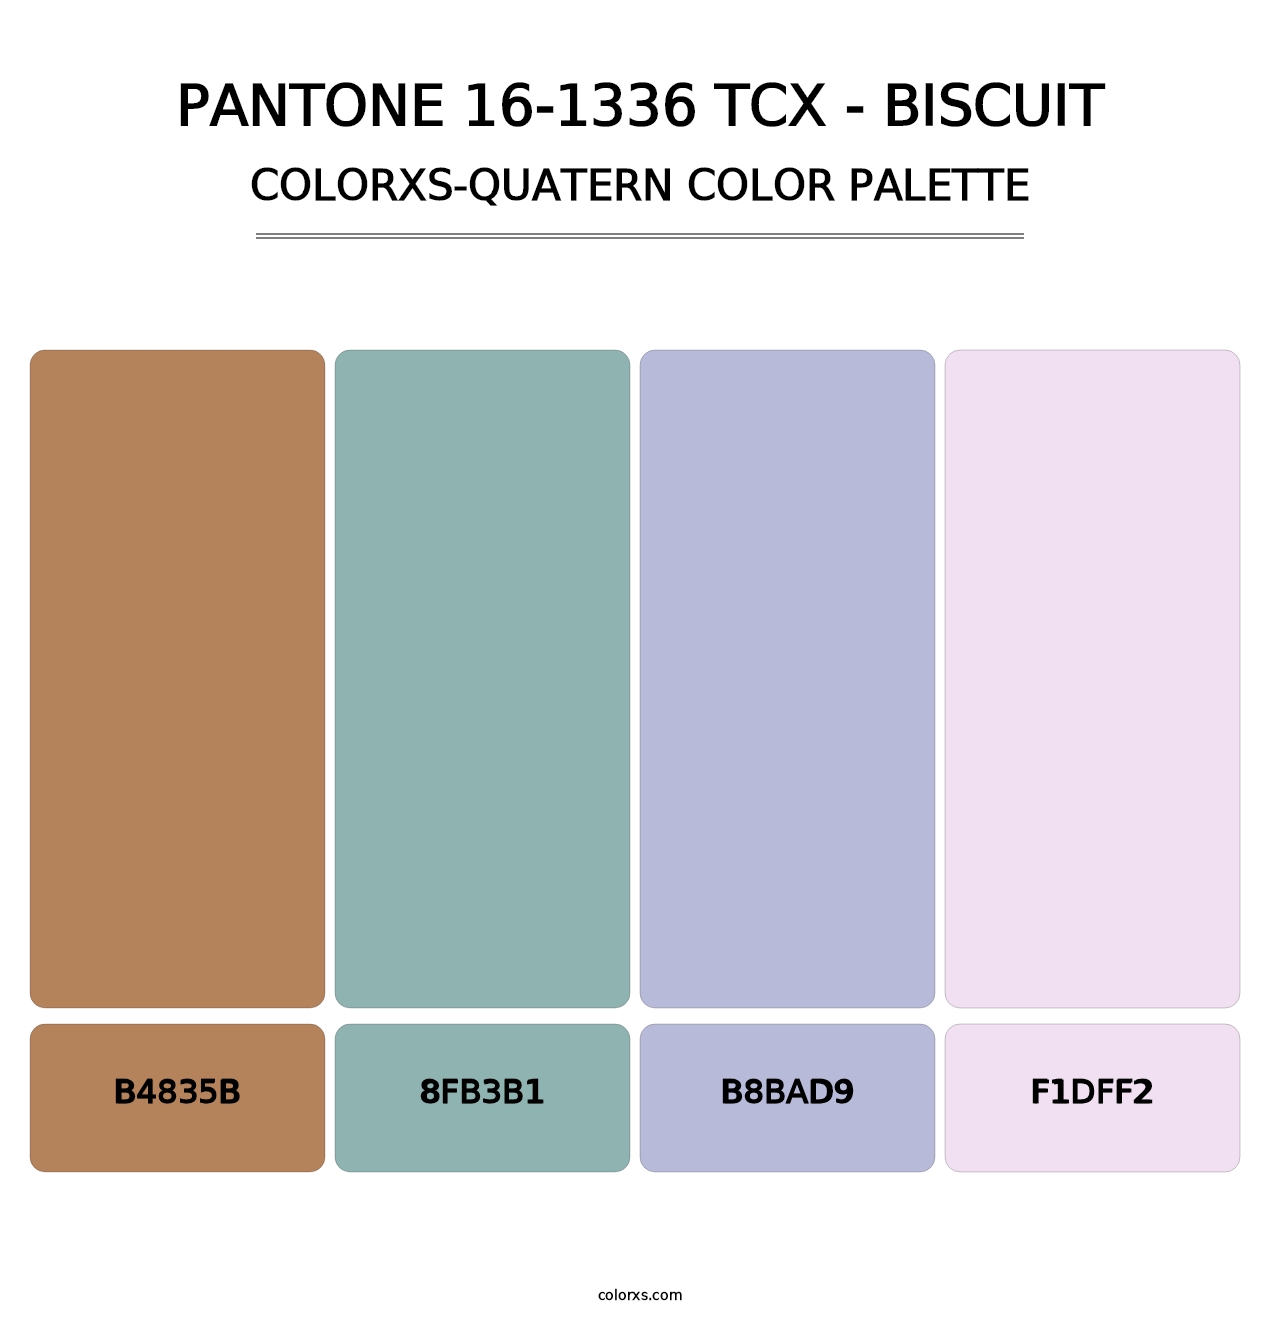 PANTONE 16-1336 TCX - Biscuit - Colorxs Quatern Palette